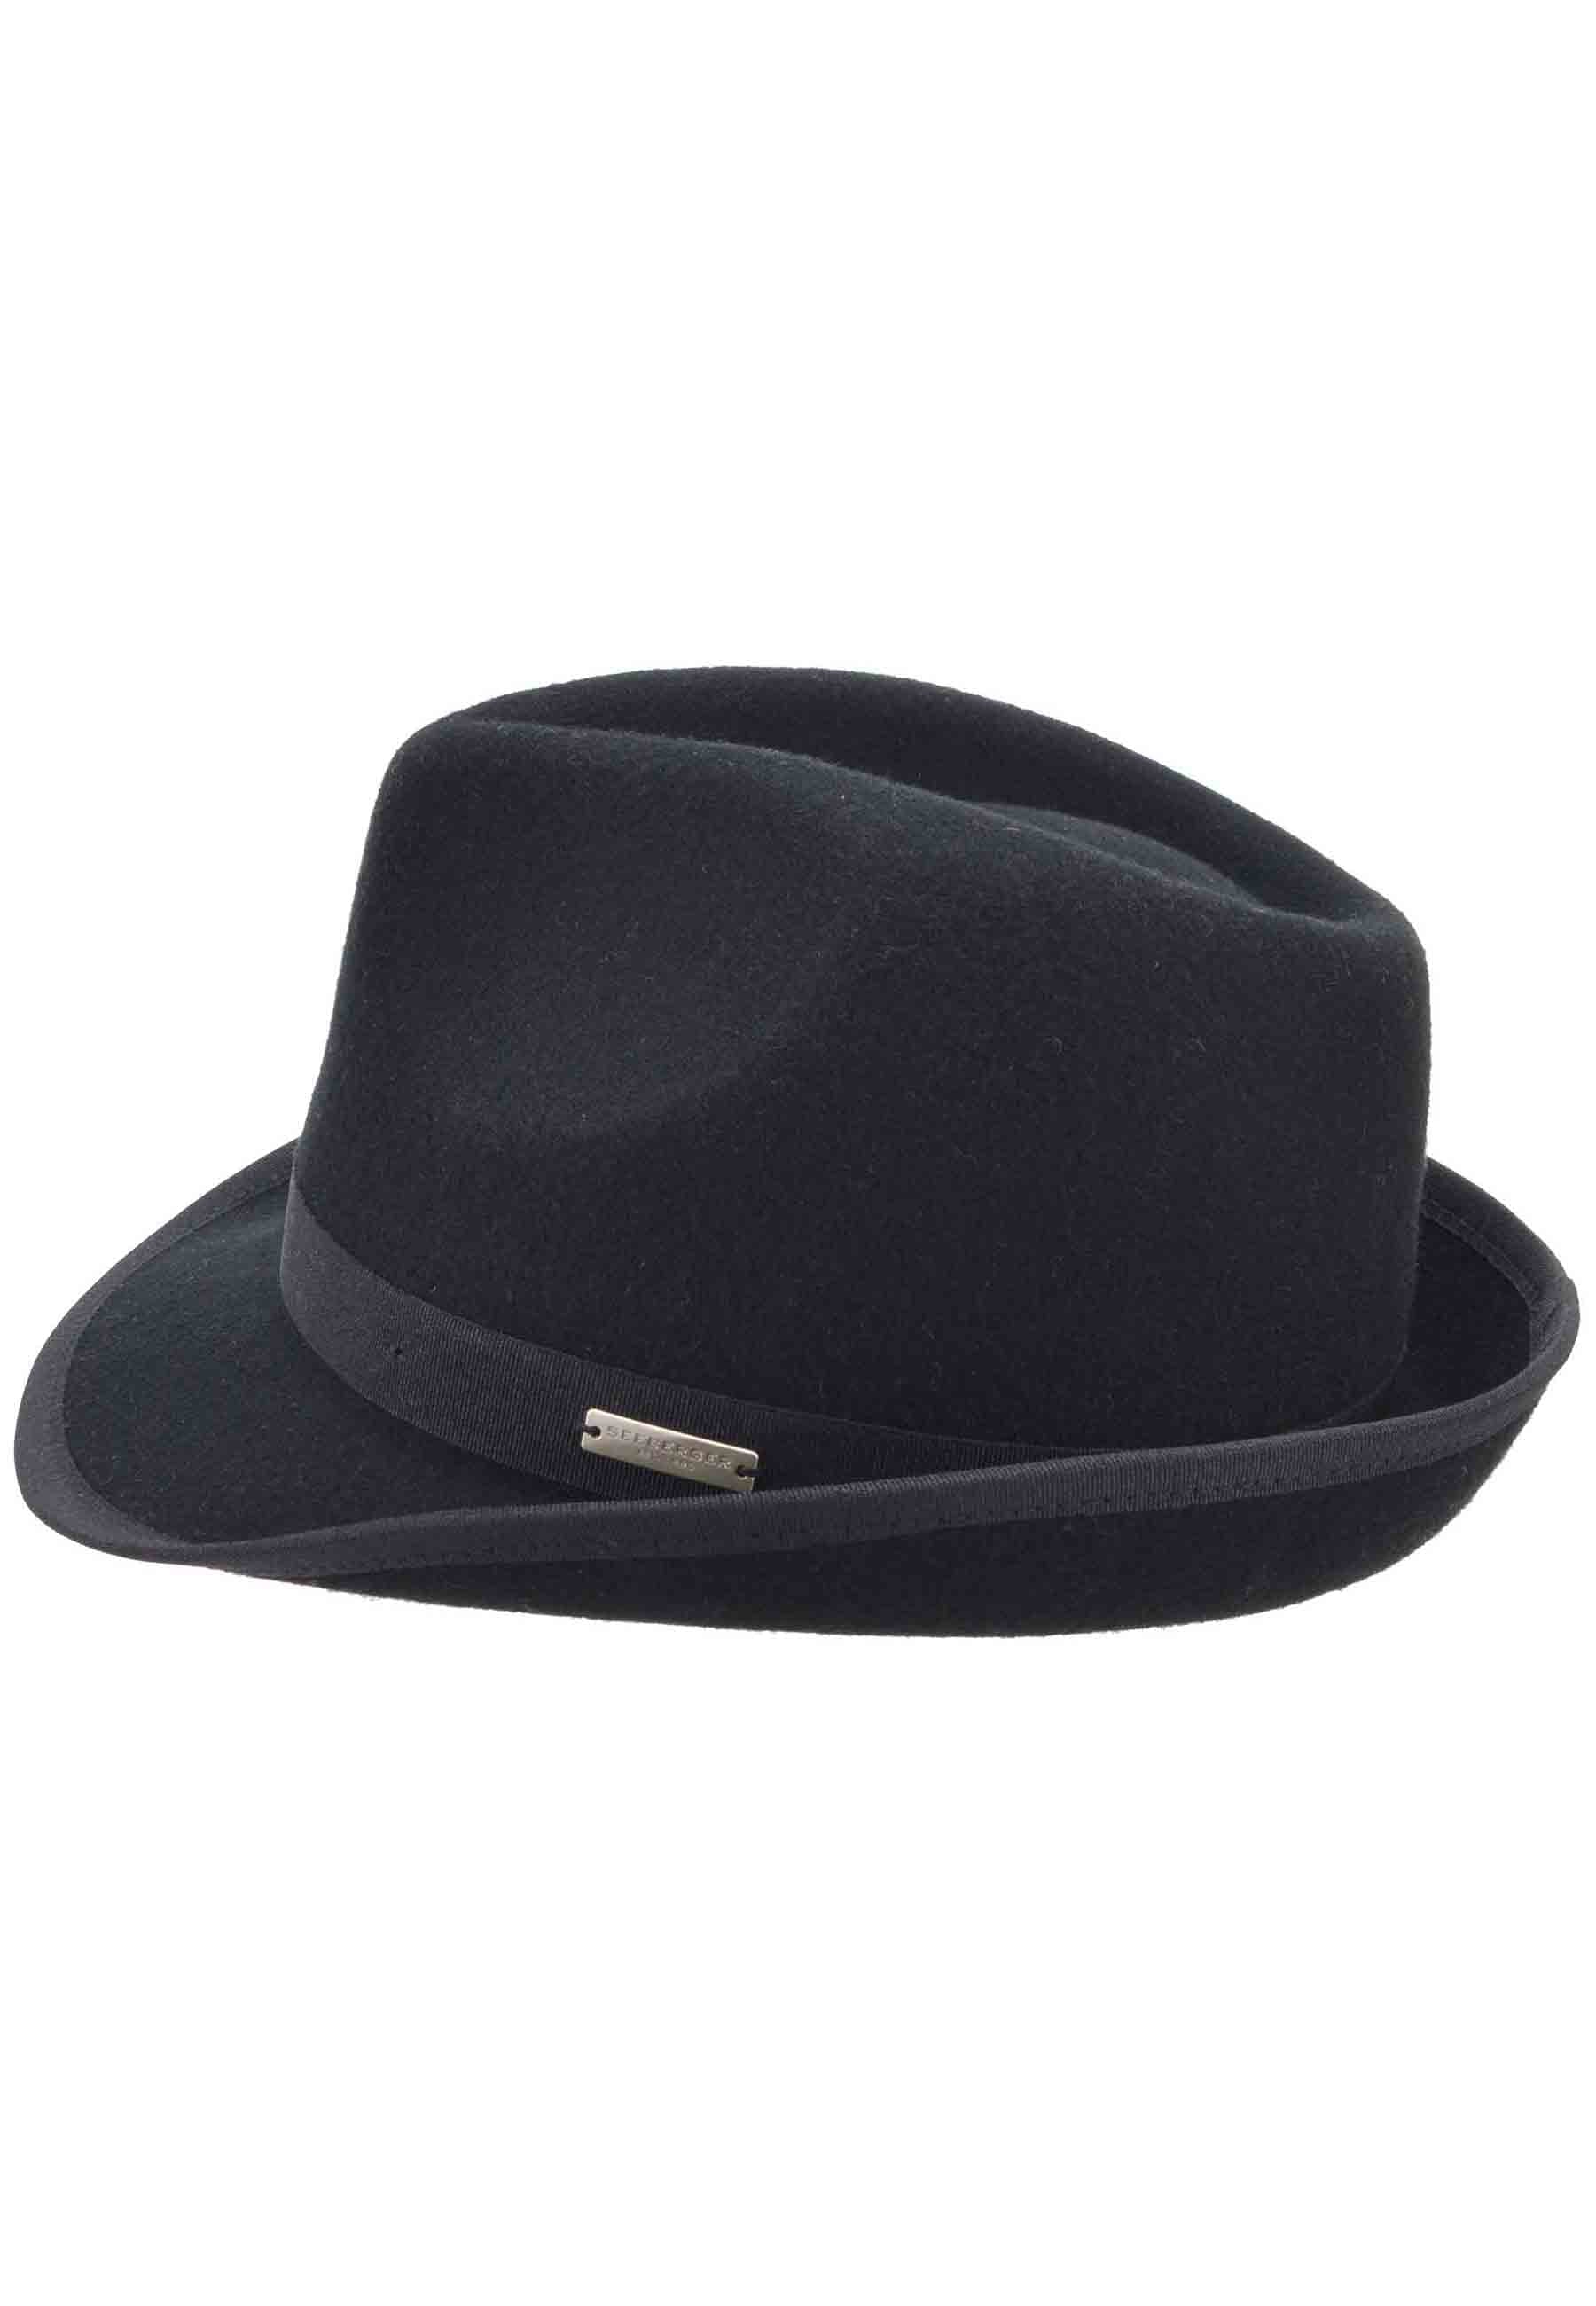 Cappello donna Trilby in lana nera